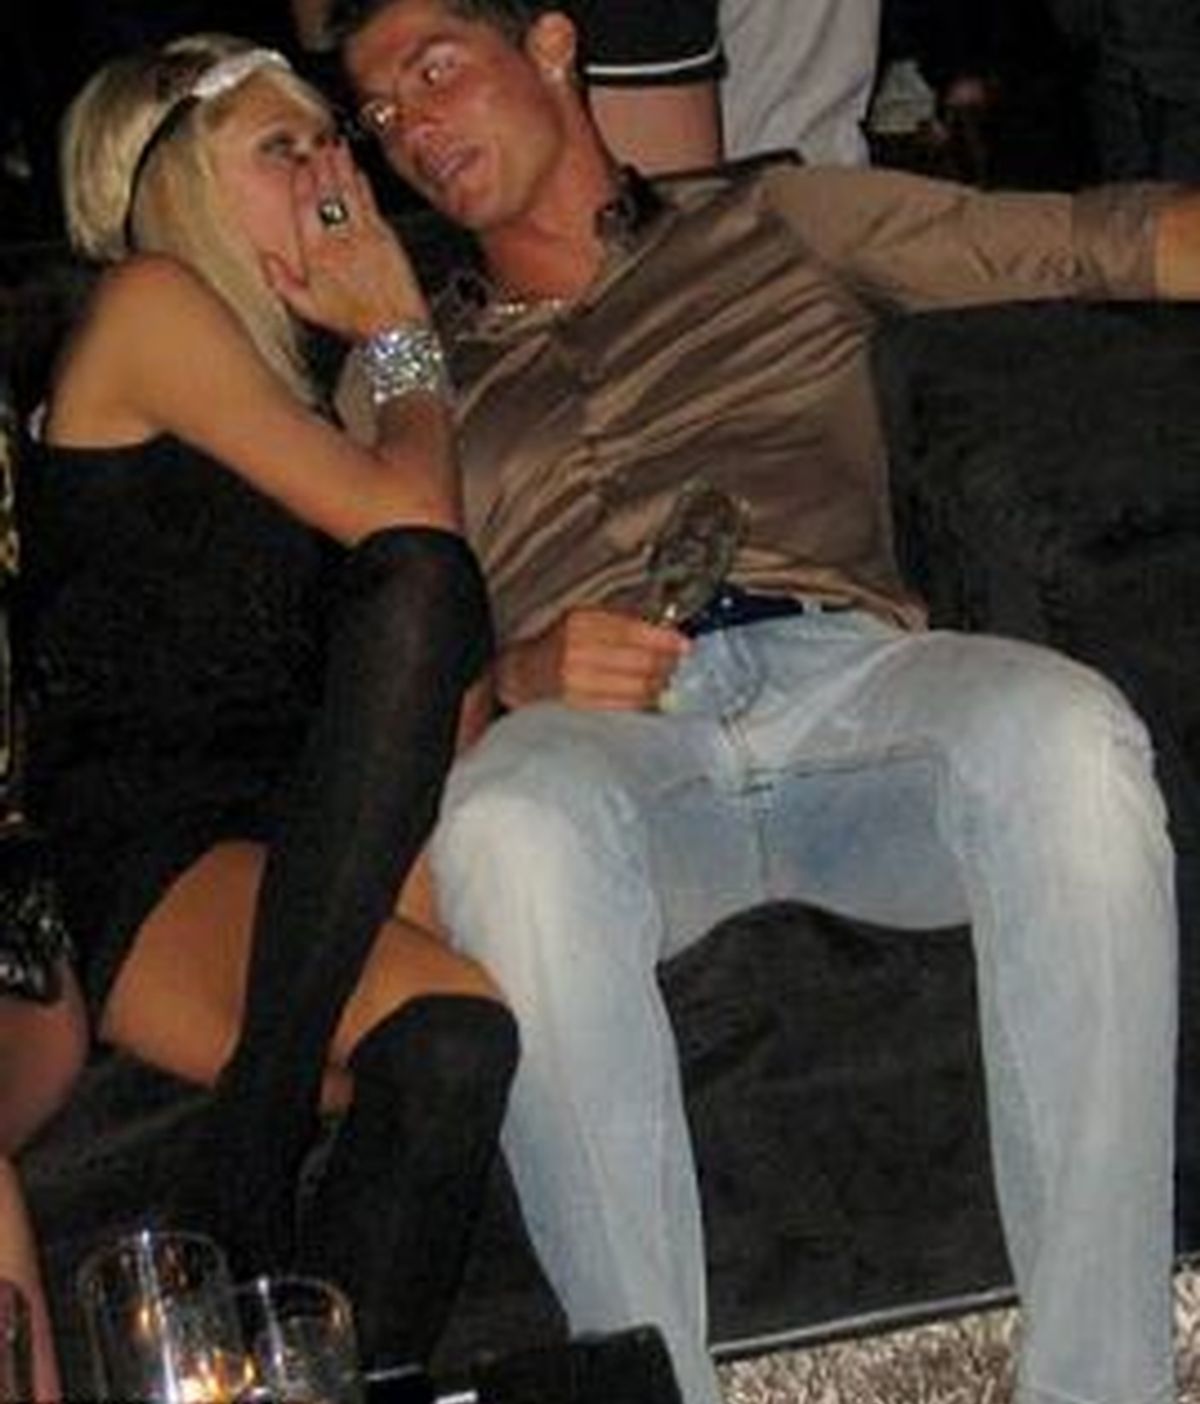 La nueva pareja, Paris Hilton y Cristiano Ronaldo ,  en la divertida noche que se pasaron en un club VIP de Los Angeles.